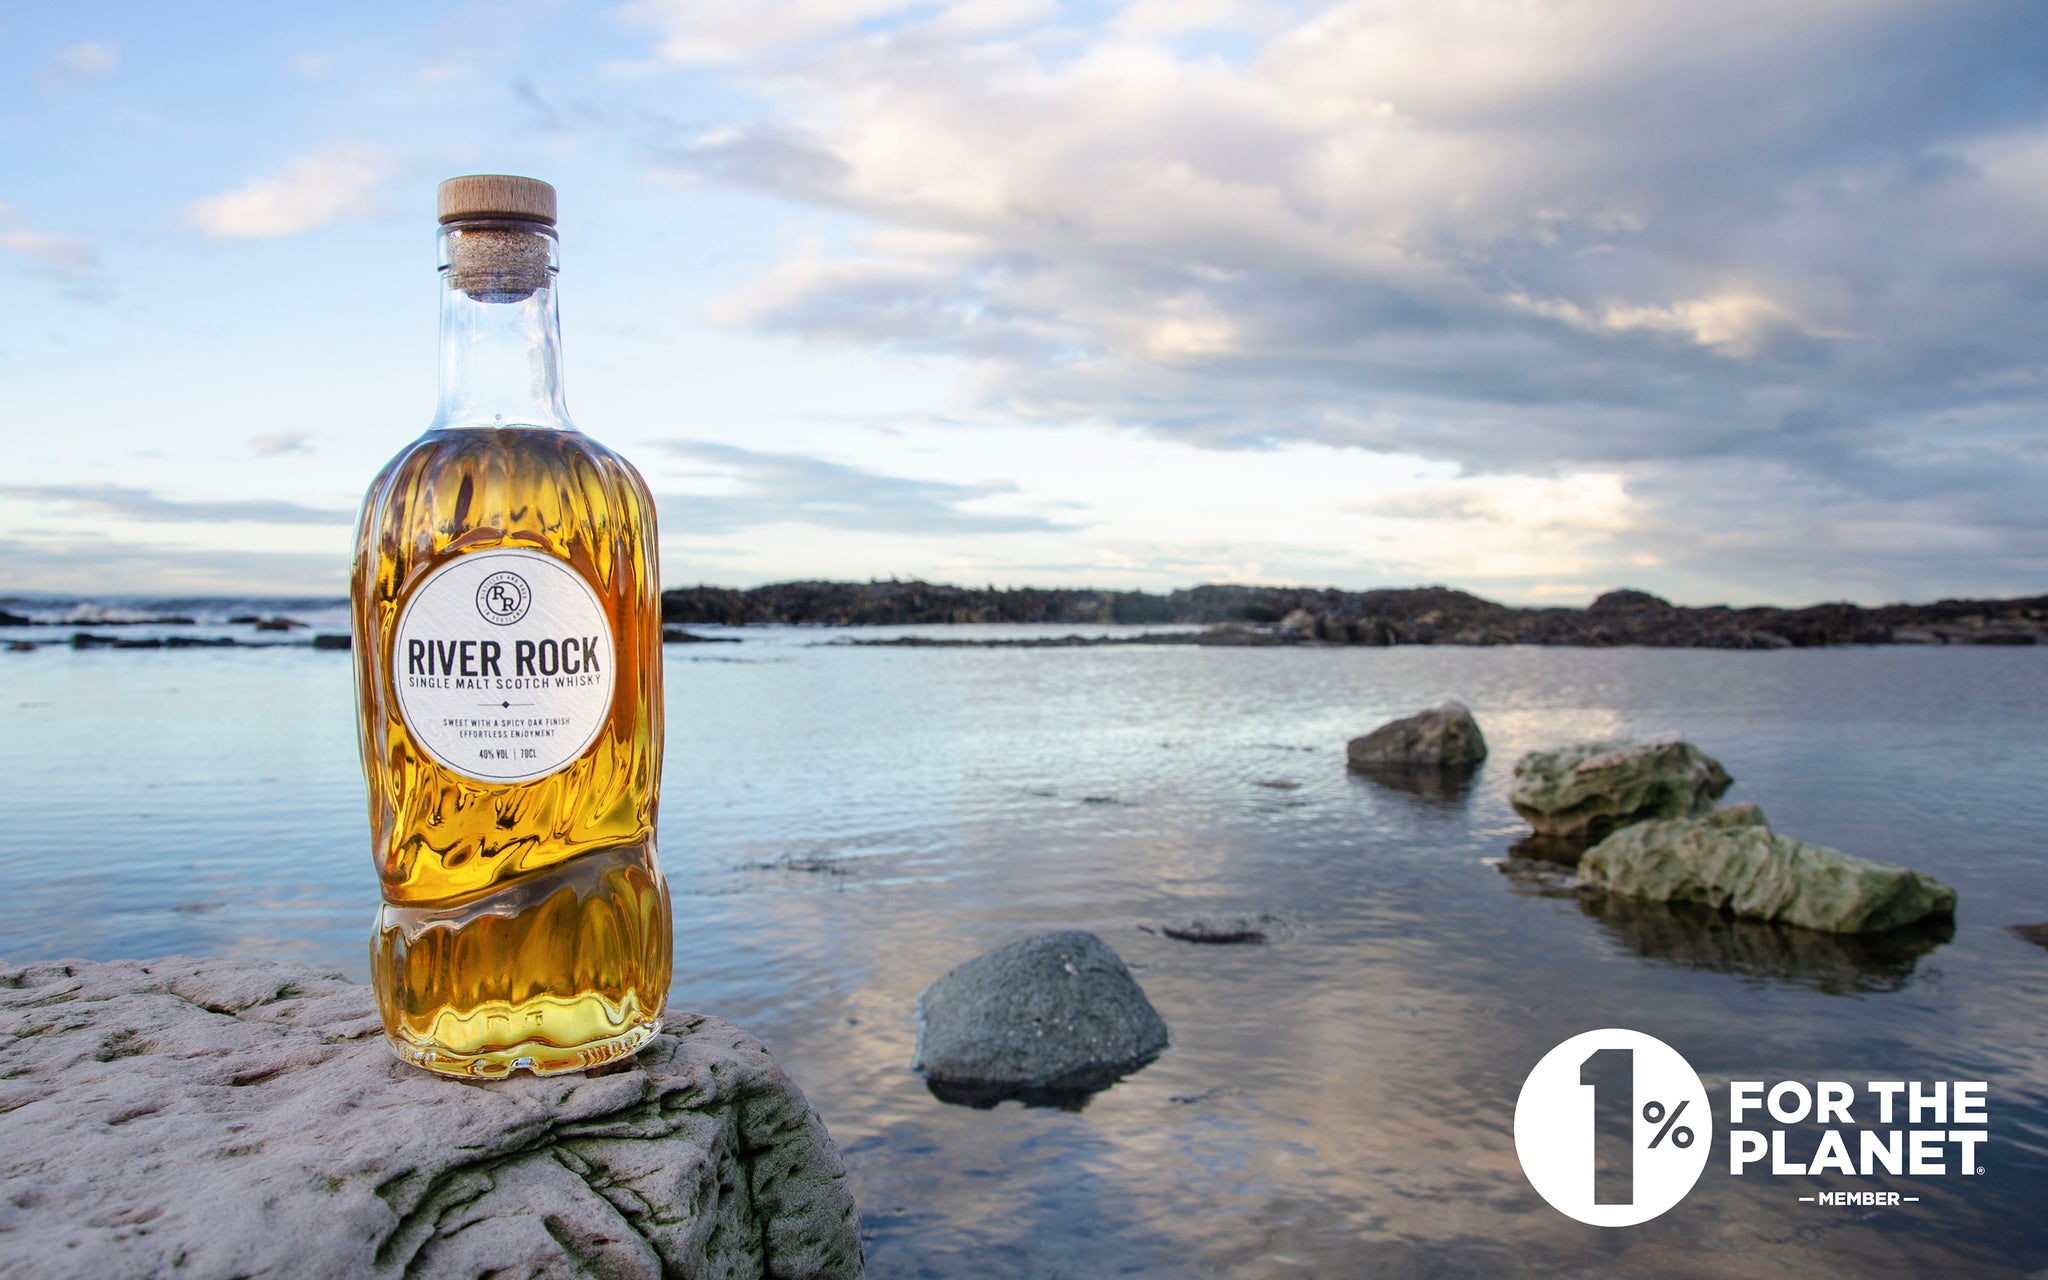 River Rock Whisky  Single Malt Scotch